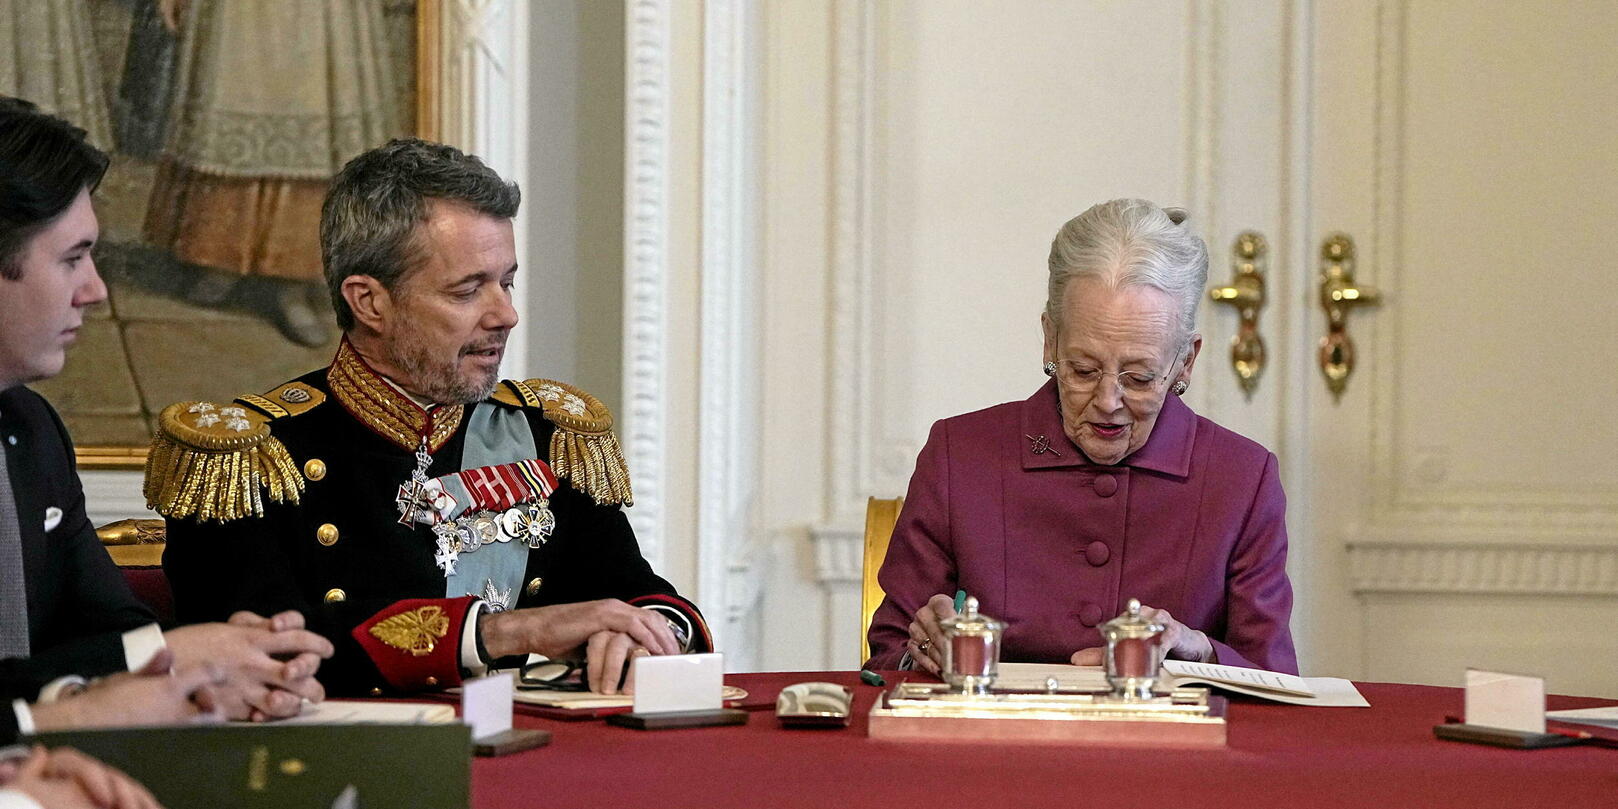 Margrethe II de Danemark, le destin d'une reine sans couronne